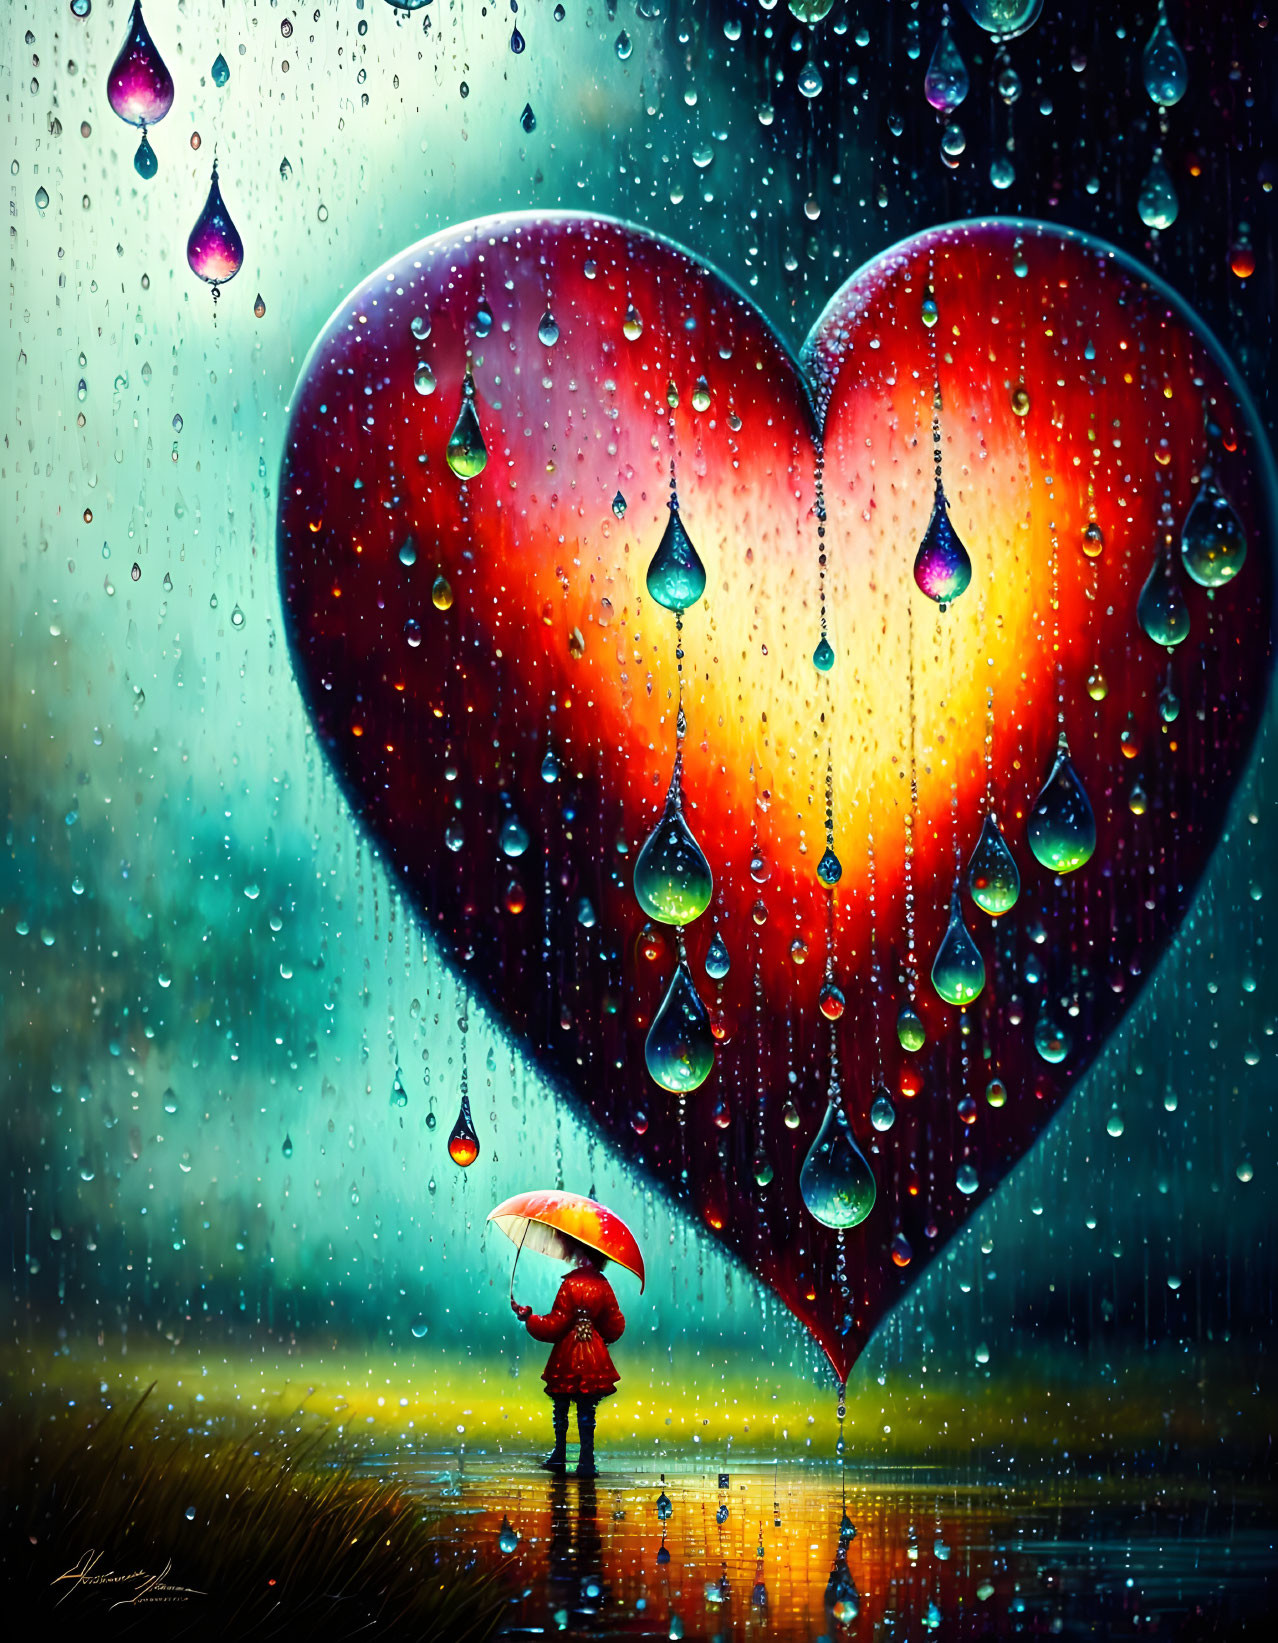 Rain love